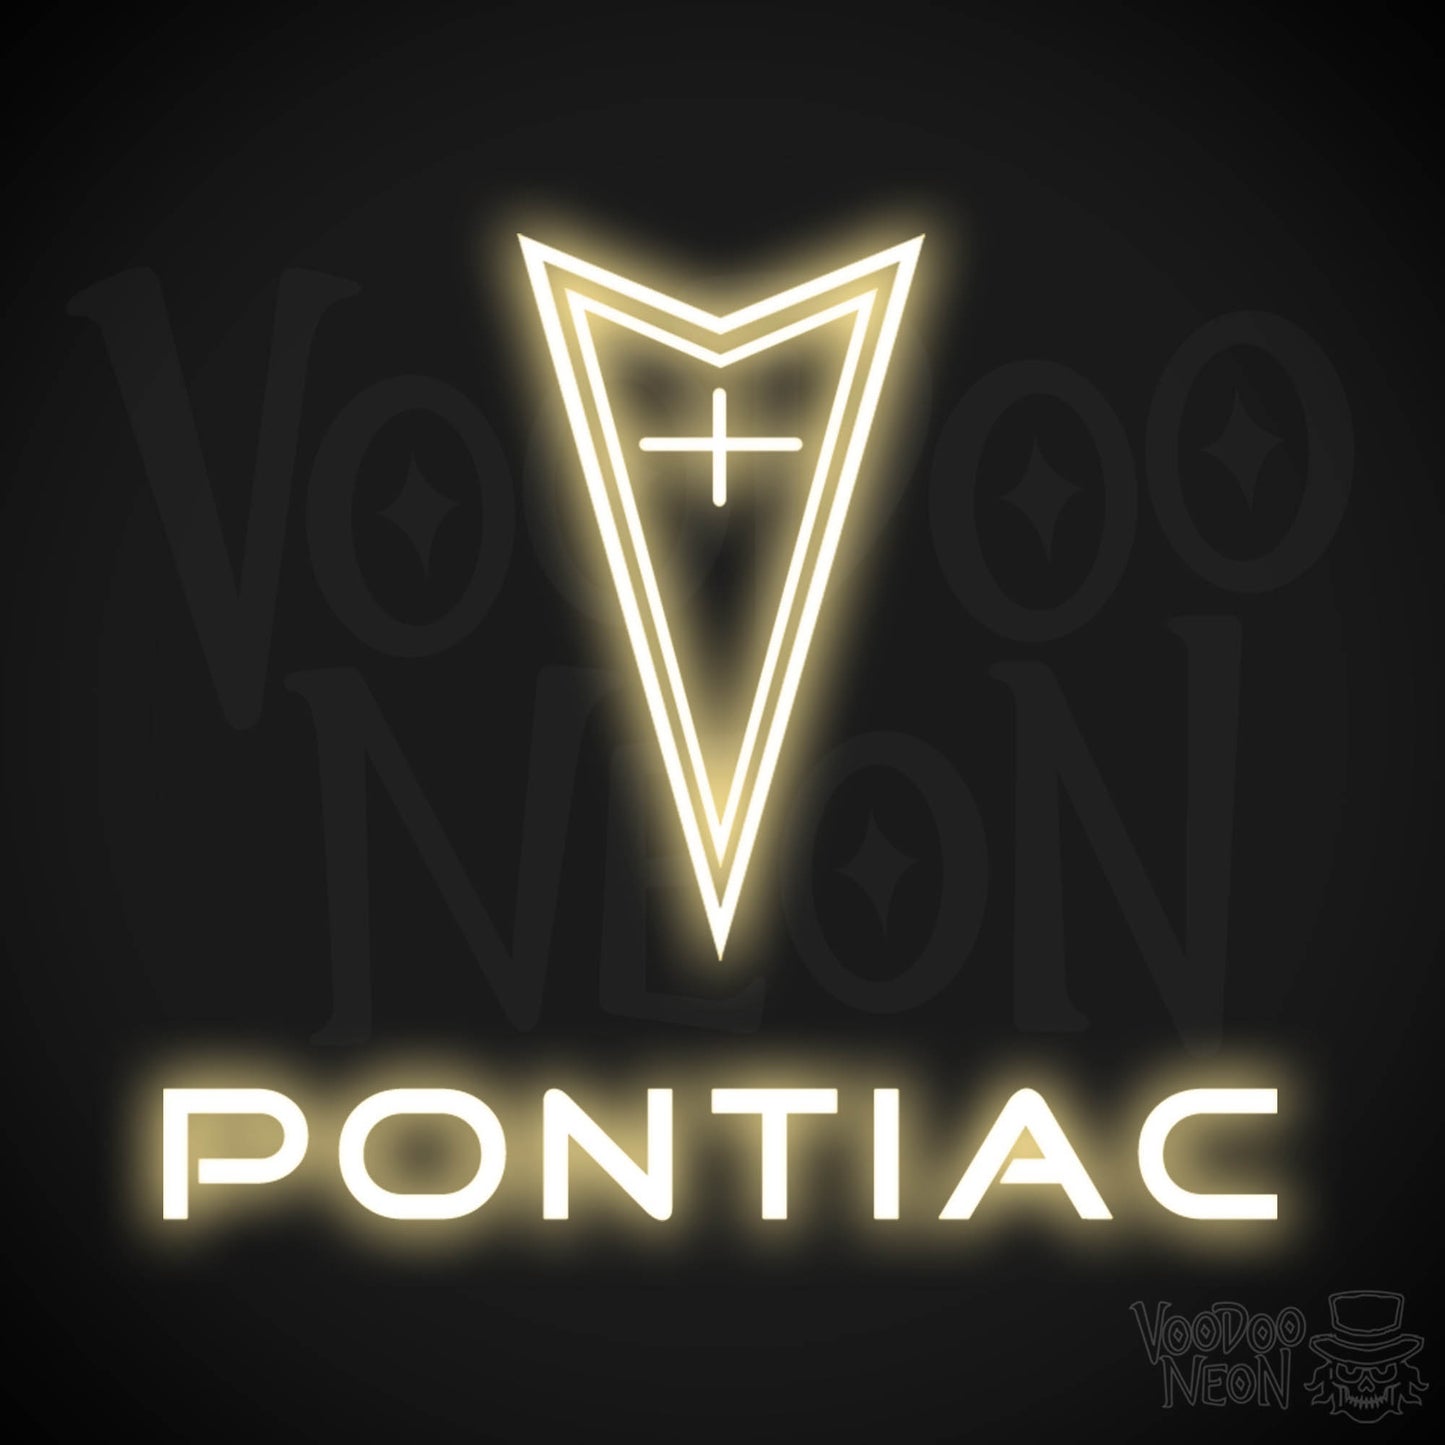 Pontiac Neon Sign - Pontiac Sign - Pontiac Decor - Wall Art - Color Warm White